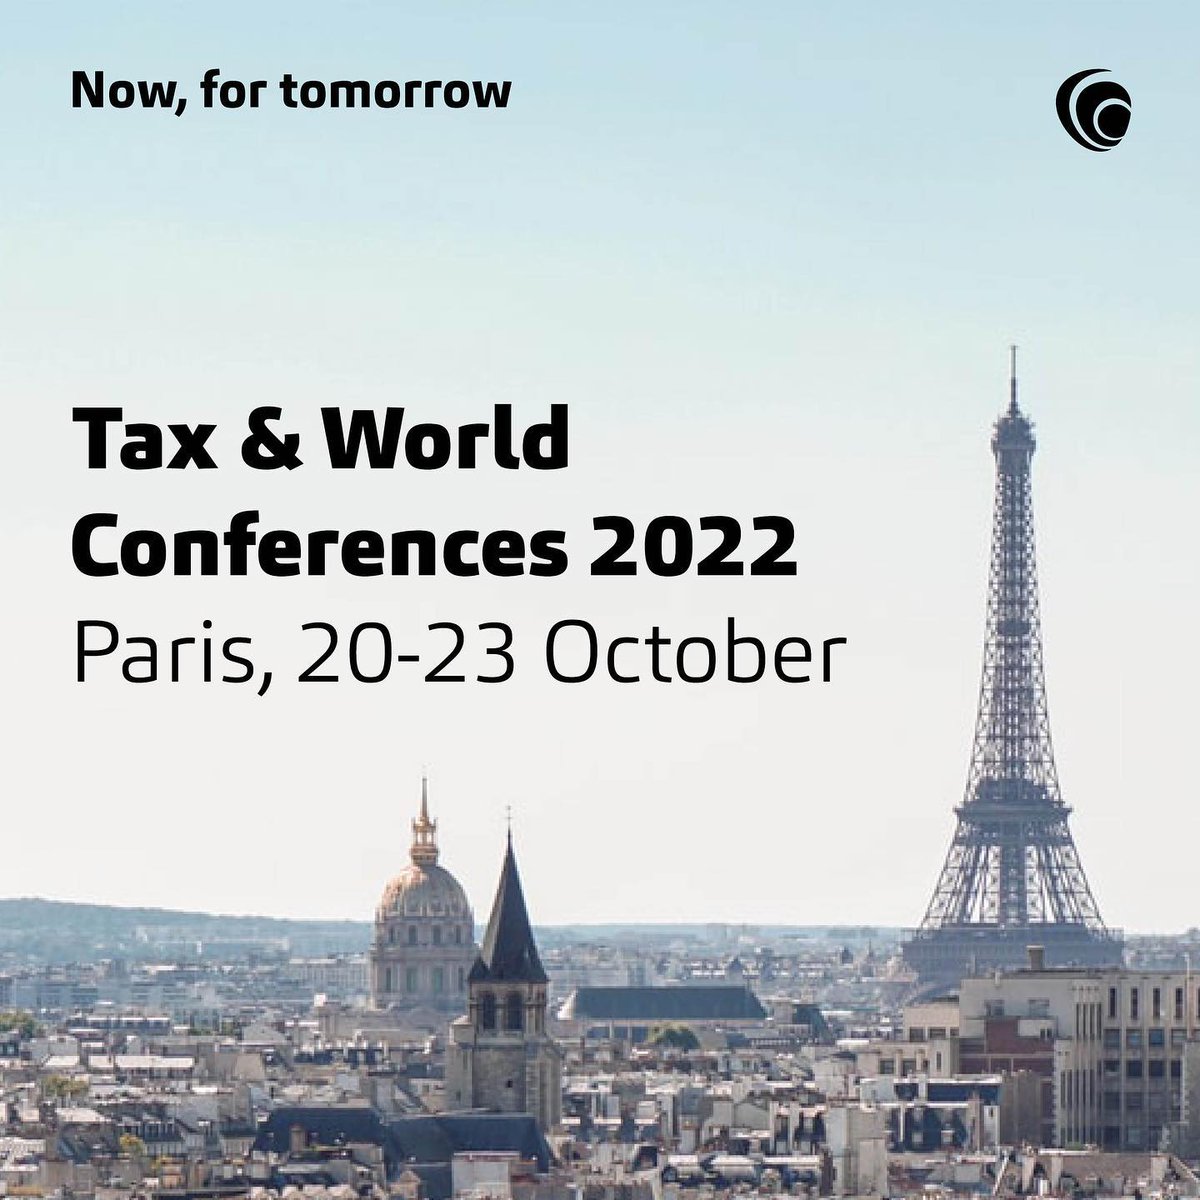 Baker Tilly Luxembourg prendra part à la World & Tax Conference de Paris du 20 au 24 Octobre. Une excellente occasion pour rencontrer les autres membres du réseau et pour s'informer sur les derniers sujets en matière de Tax.
#bakertilly #worldconference #taxconference